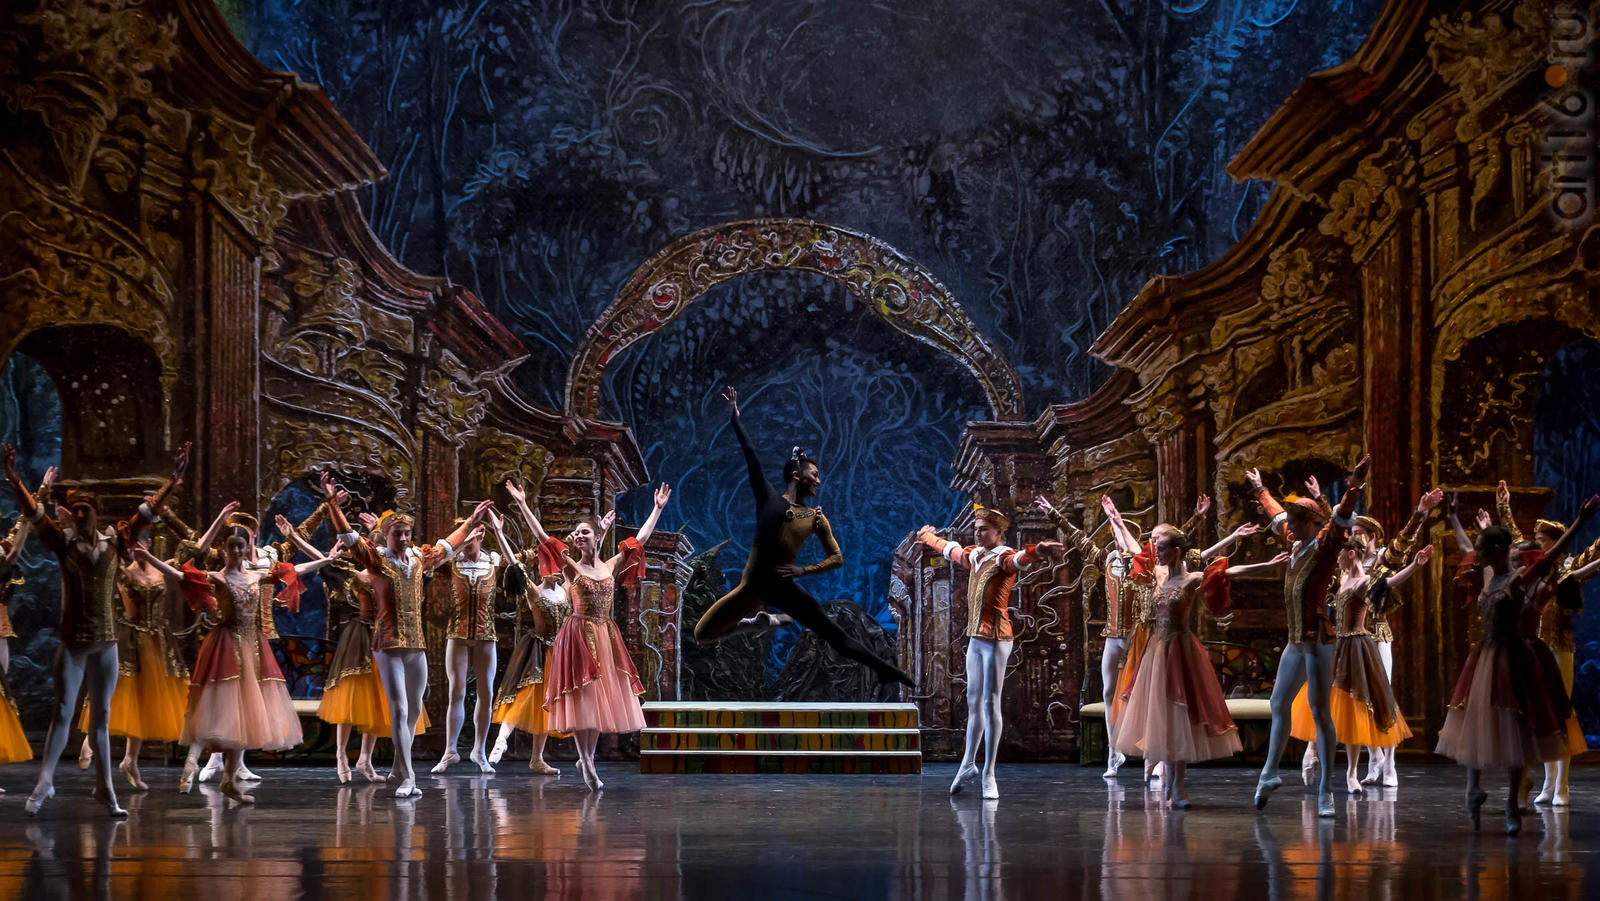 театр оперы и балета лебединое озеро